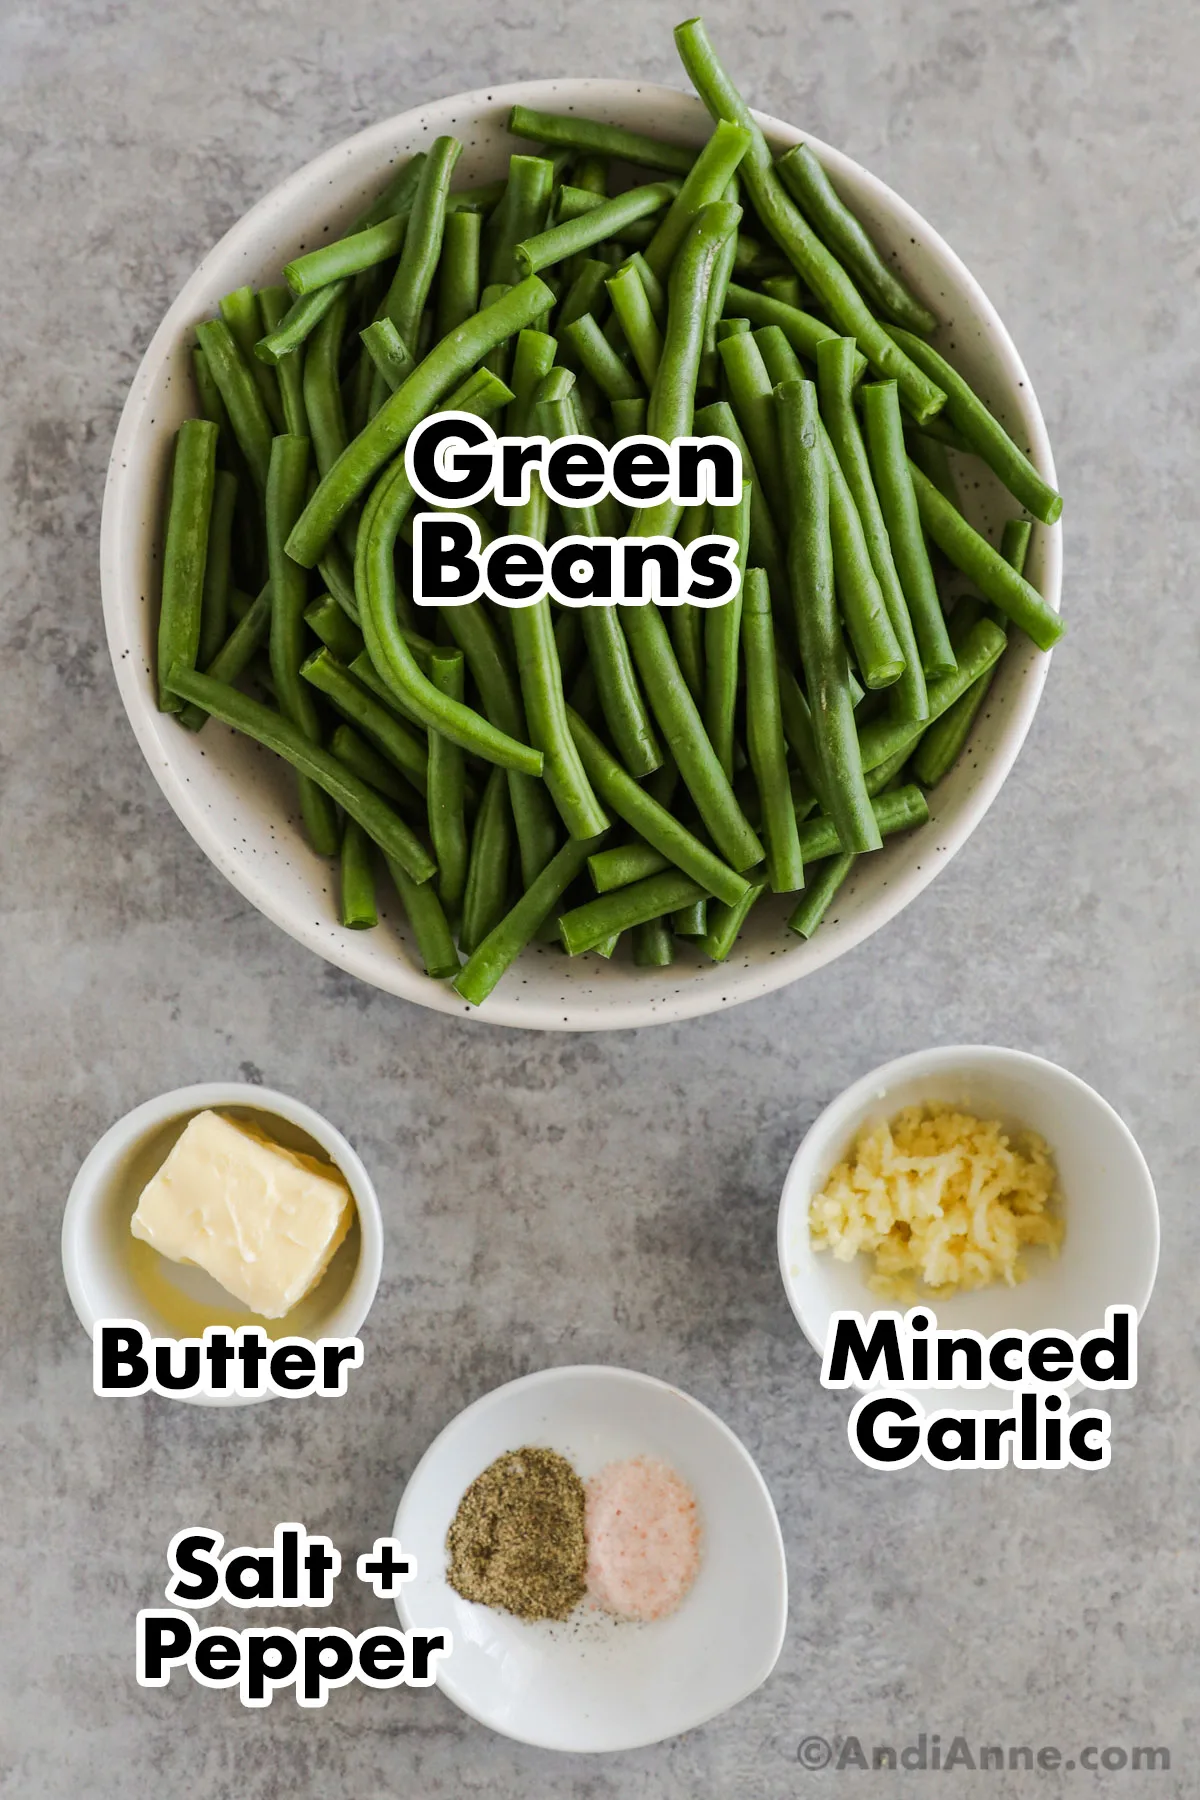 Bowls of chopped green beans, butter, minced garlic, salt and pepper.